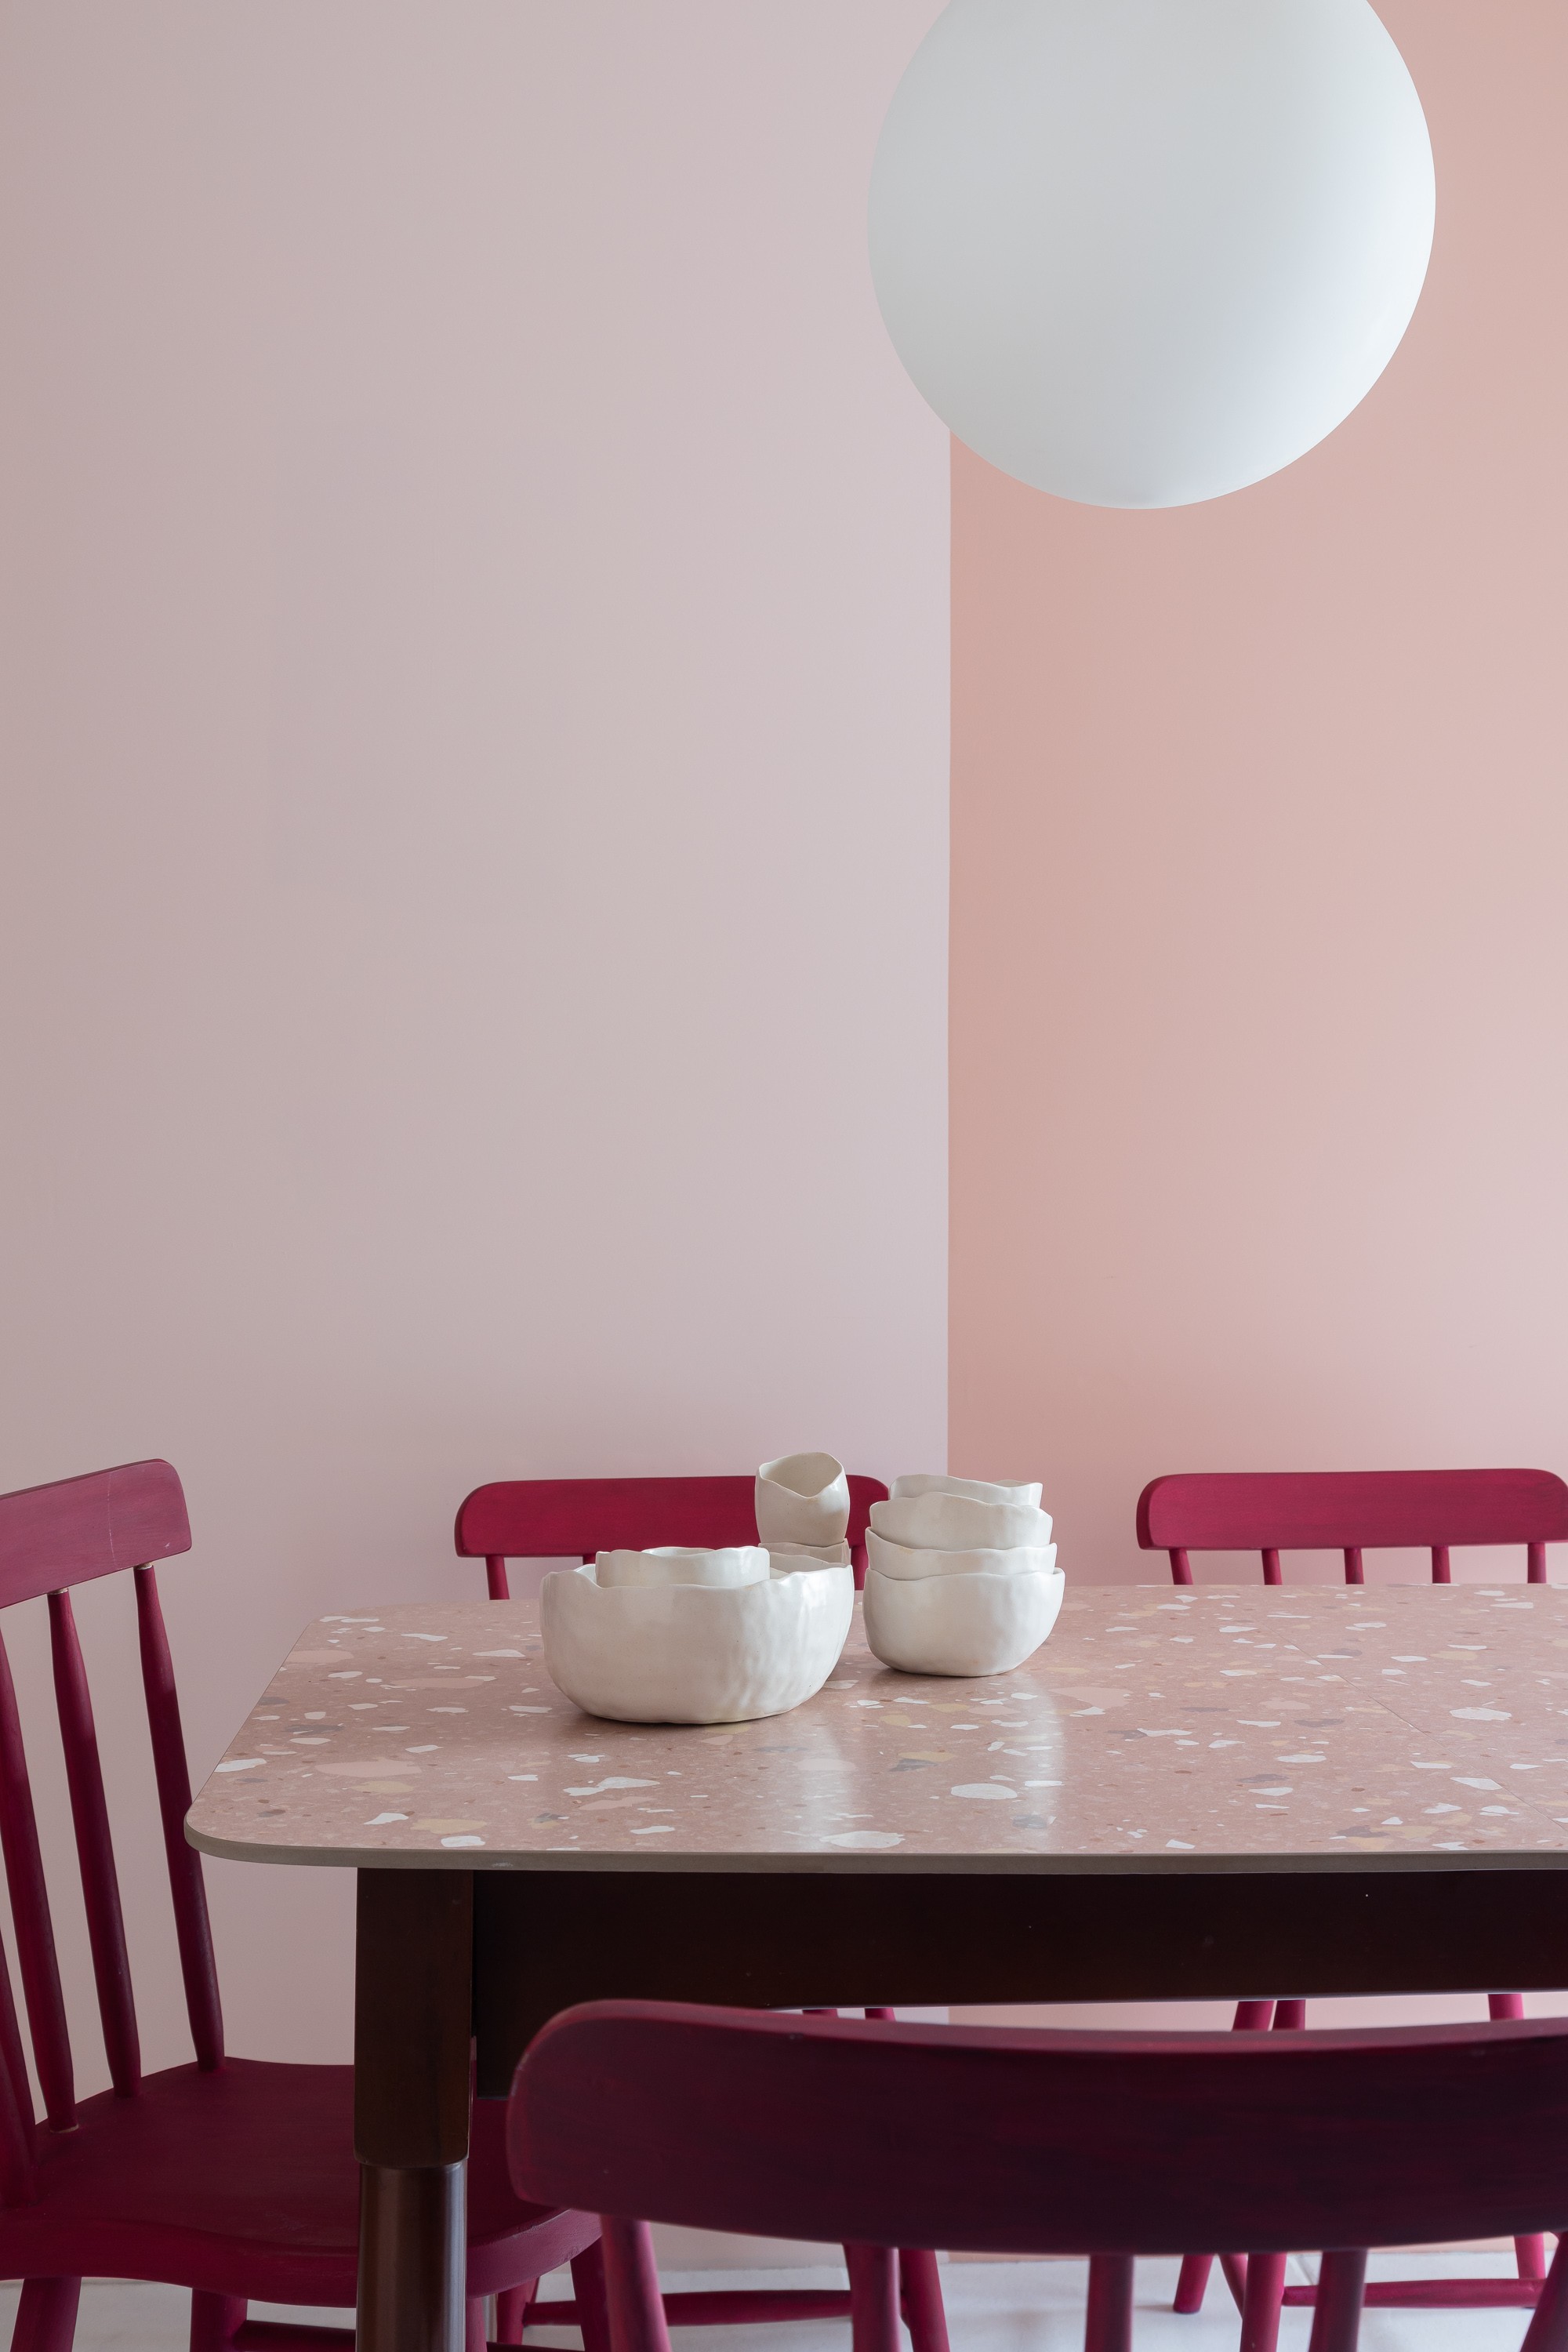 Apartamento é transformado com cores e artesanato: veja antes e depois (Foto: Mariana Boro)